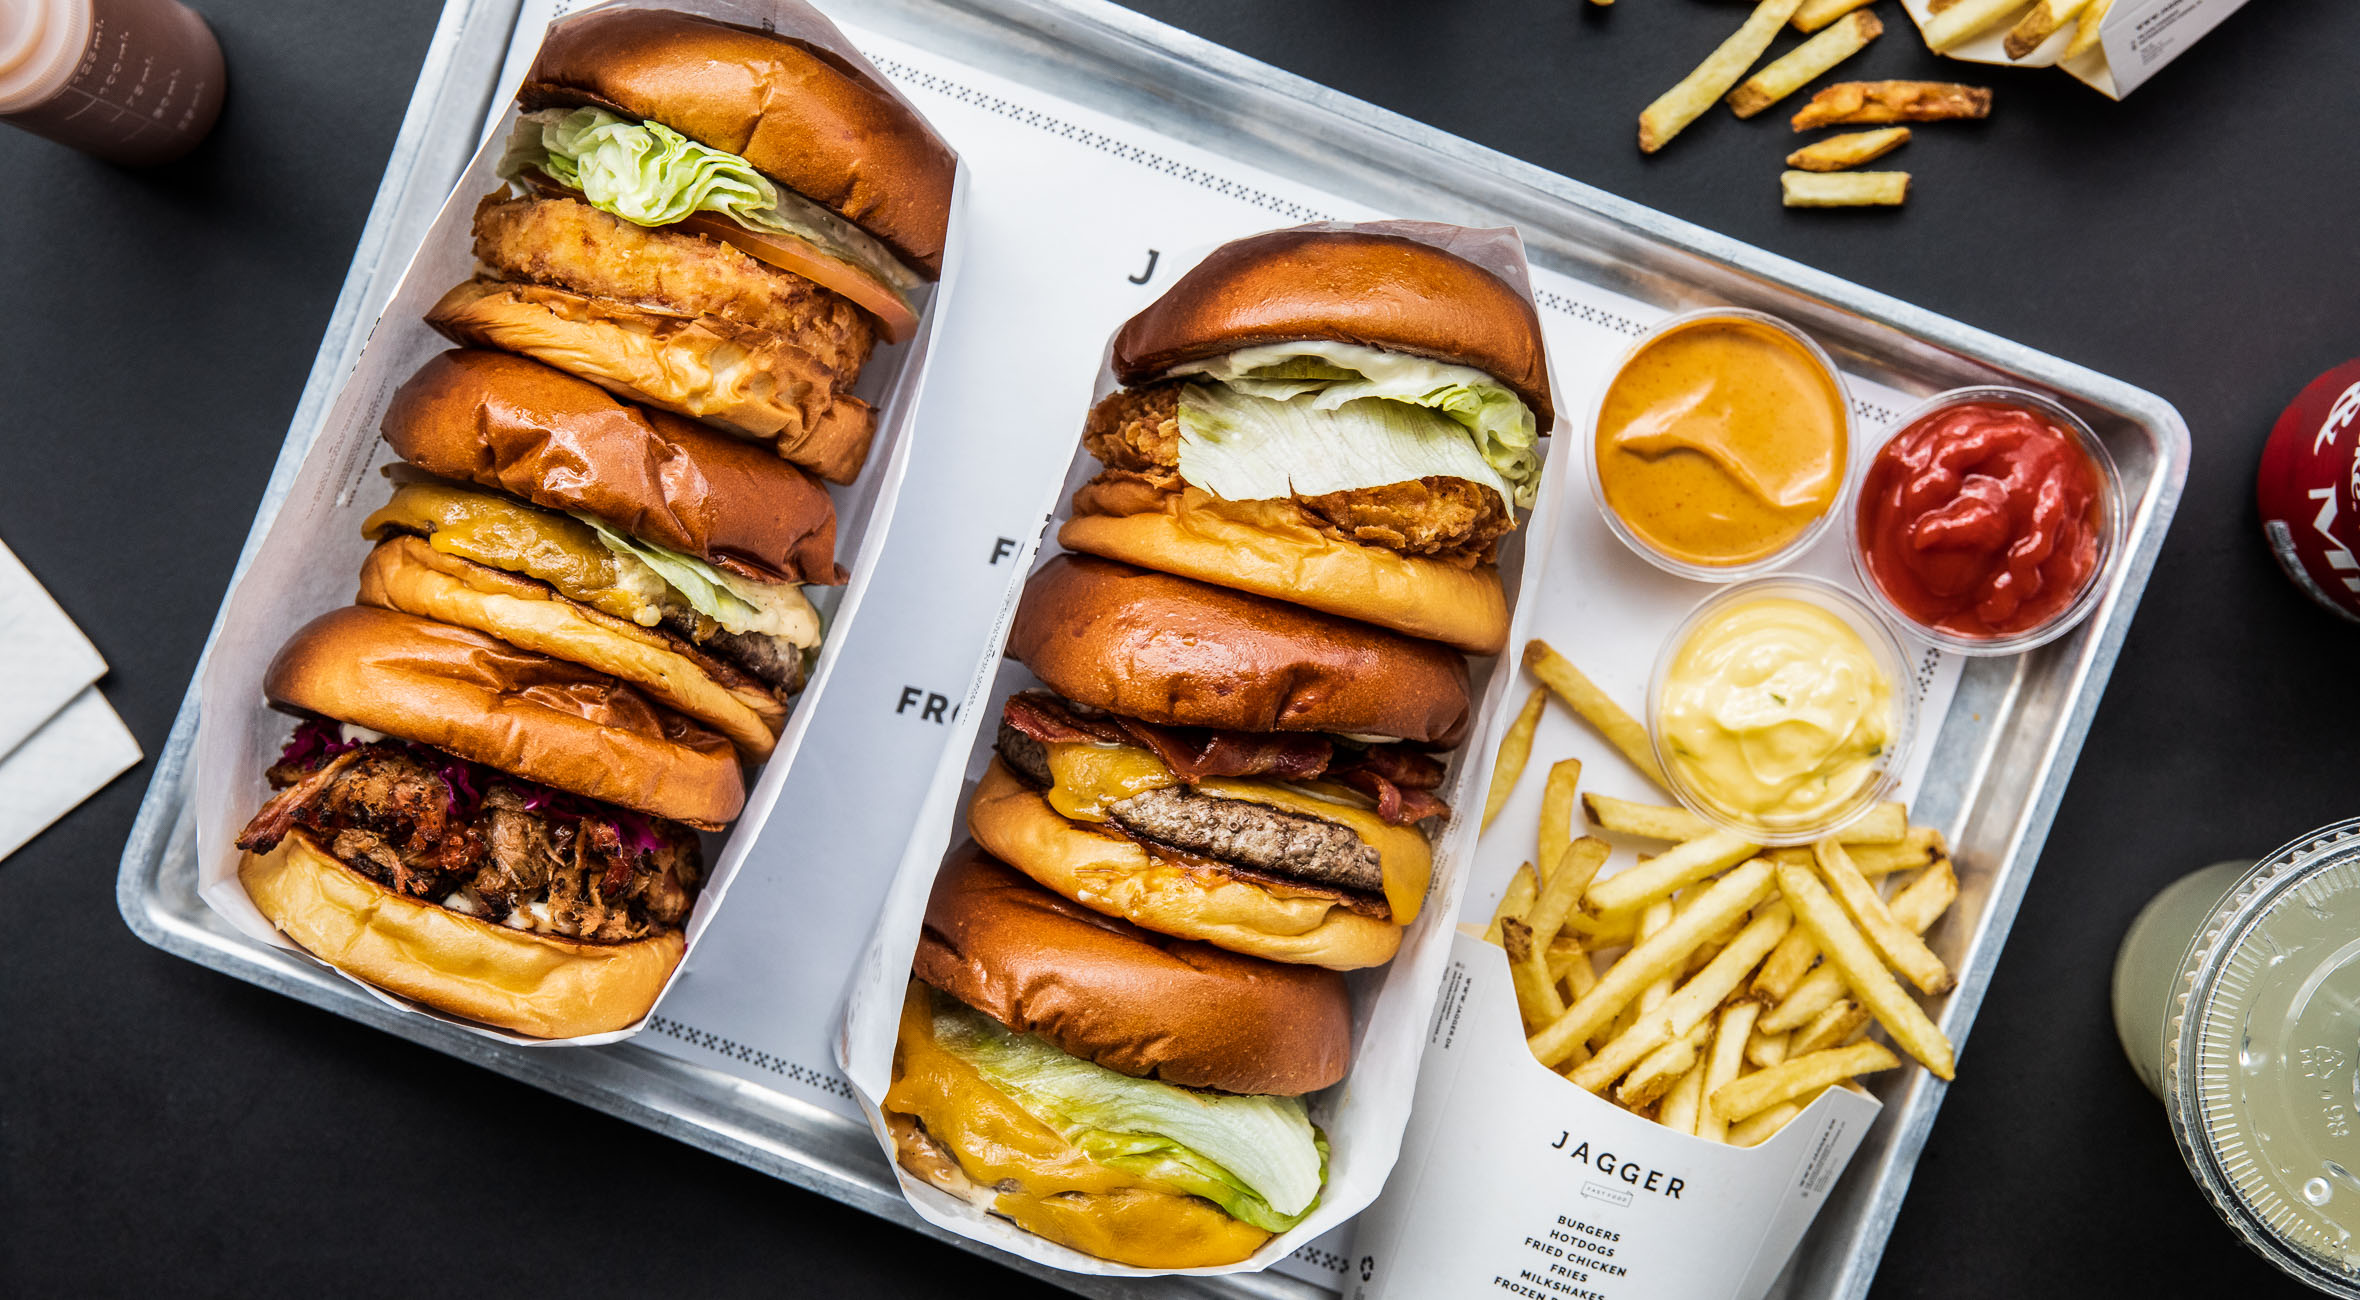 2 burgermenuer + 6 real nuggets hos Jagger på Christianshavn – Populær burgerbar har åbnet endnu en location